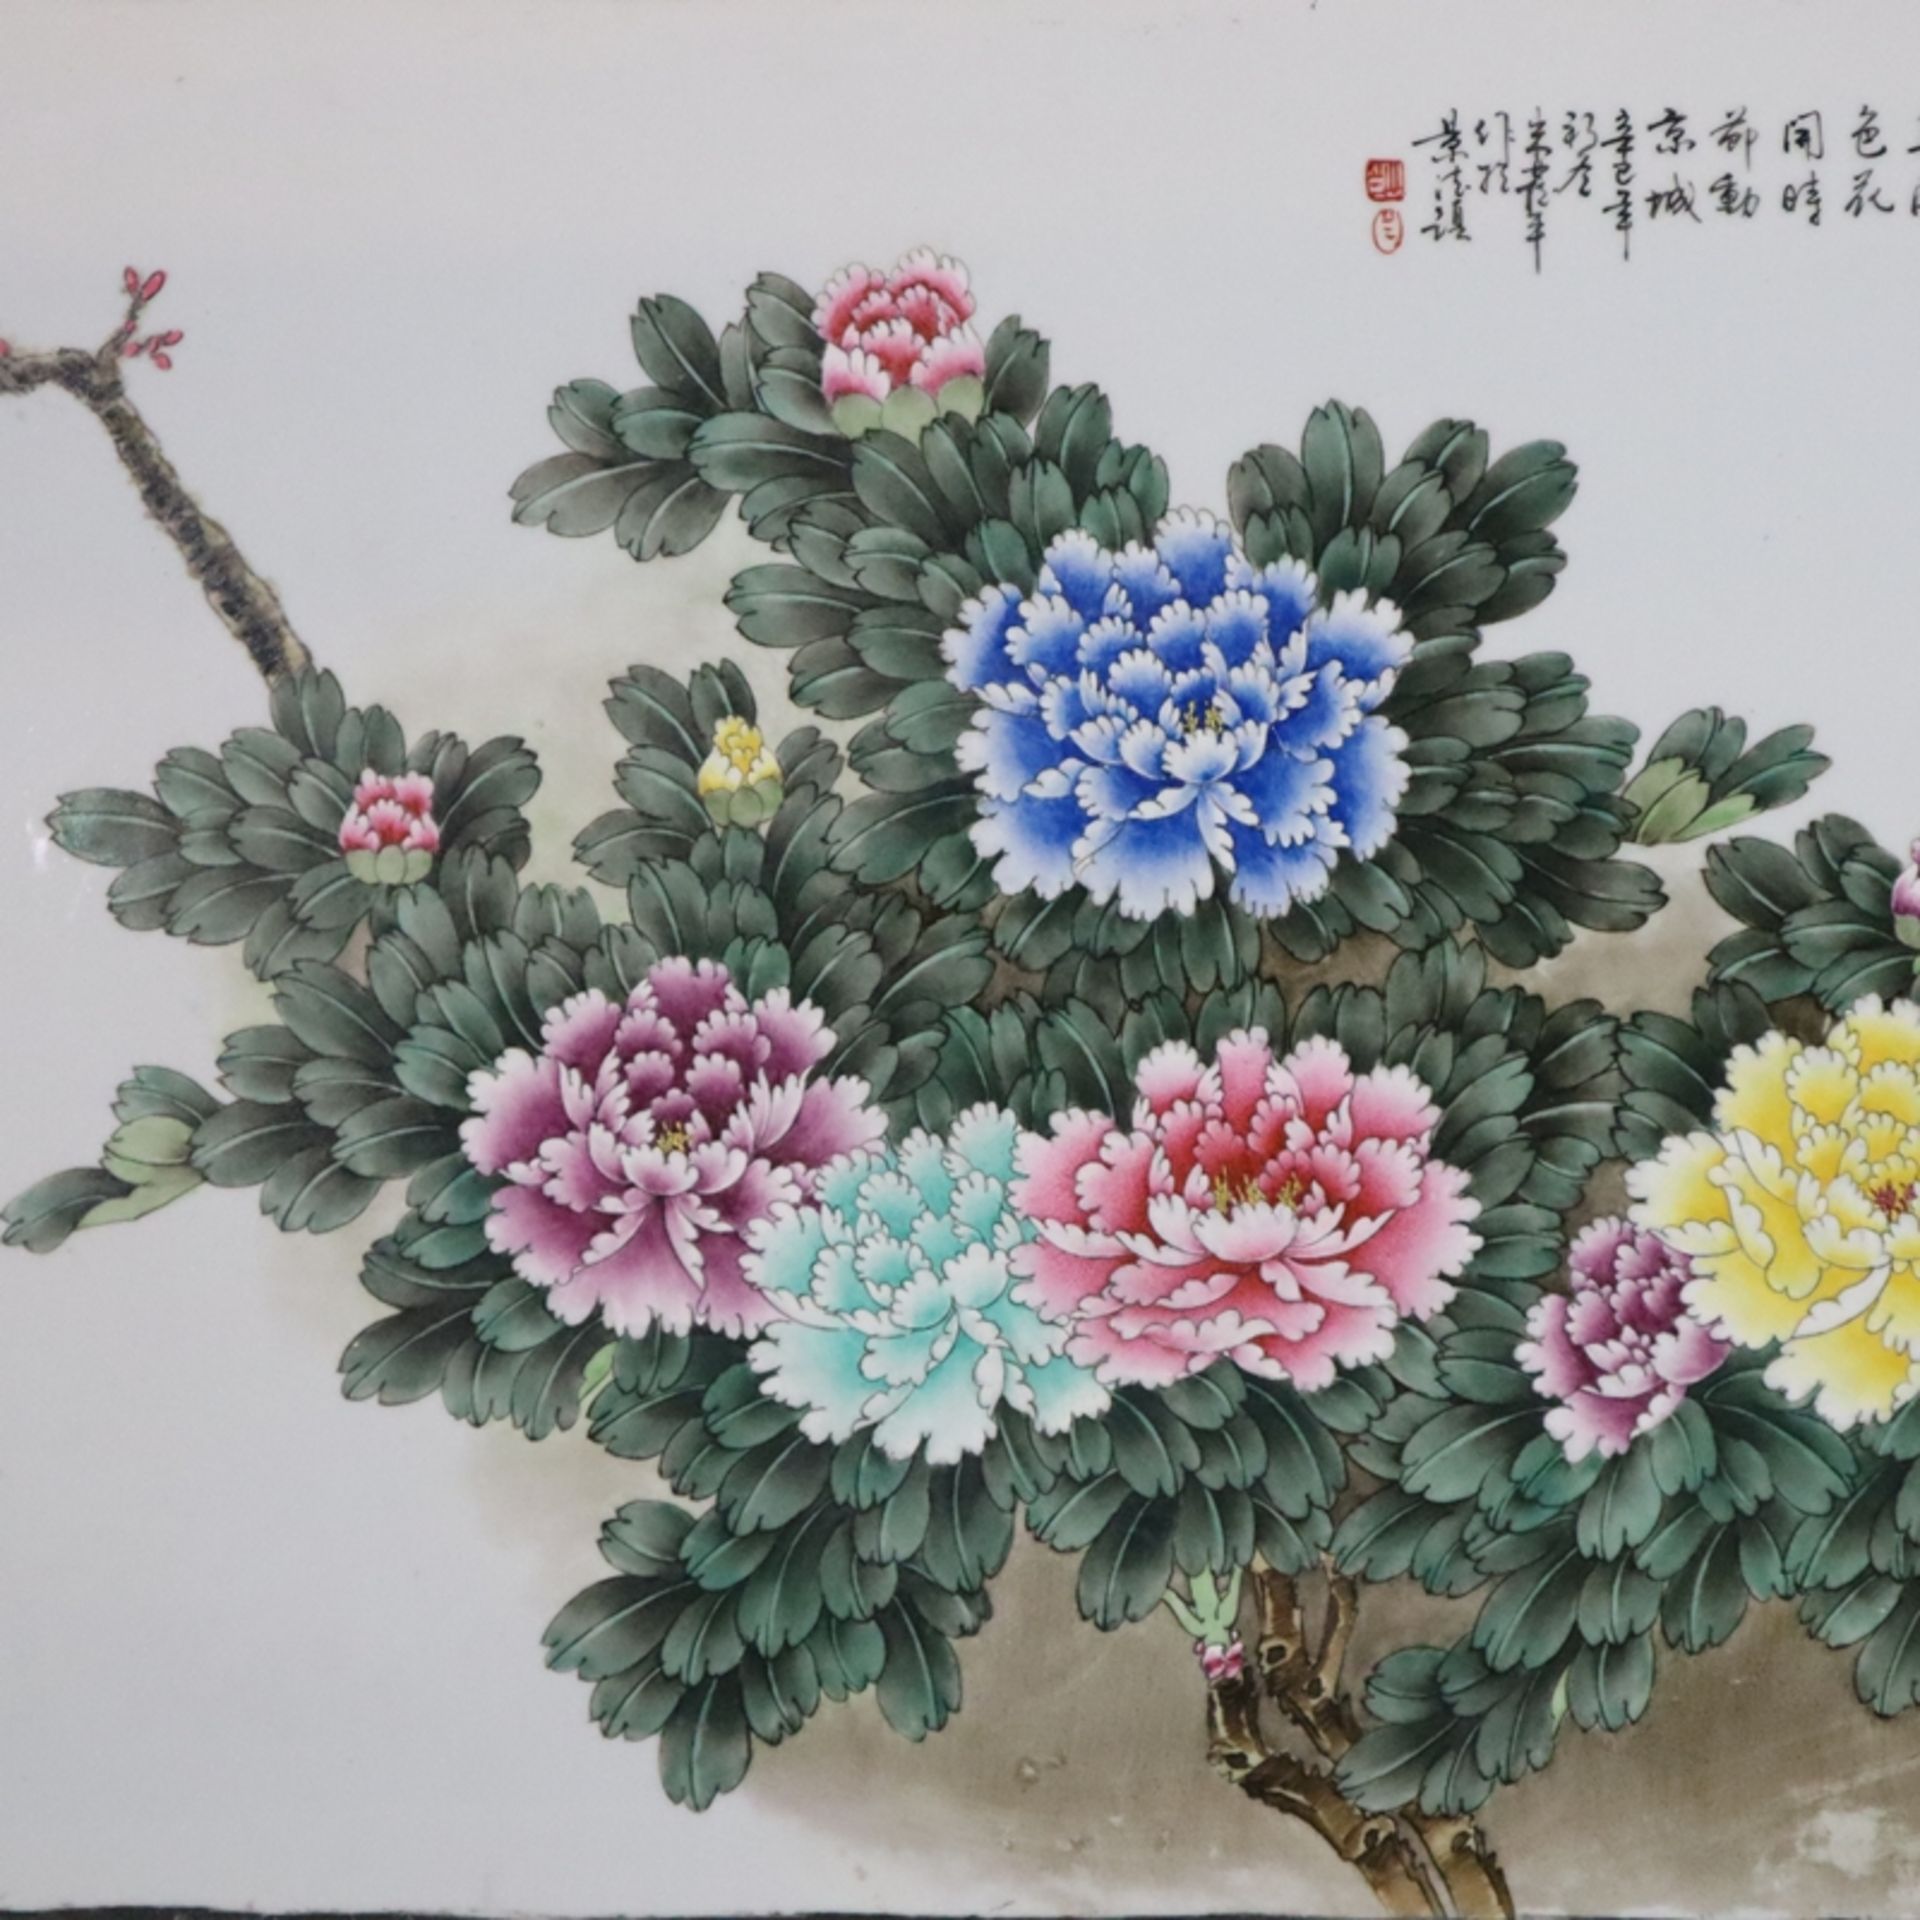 Großes schweres Porzellanbild - China, 20.Jh., Maße: 111,5 x 56,5 cm, Darstellung eines blühenden P - Image 2 of 6